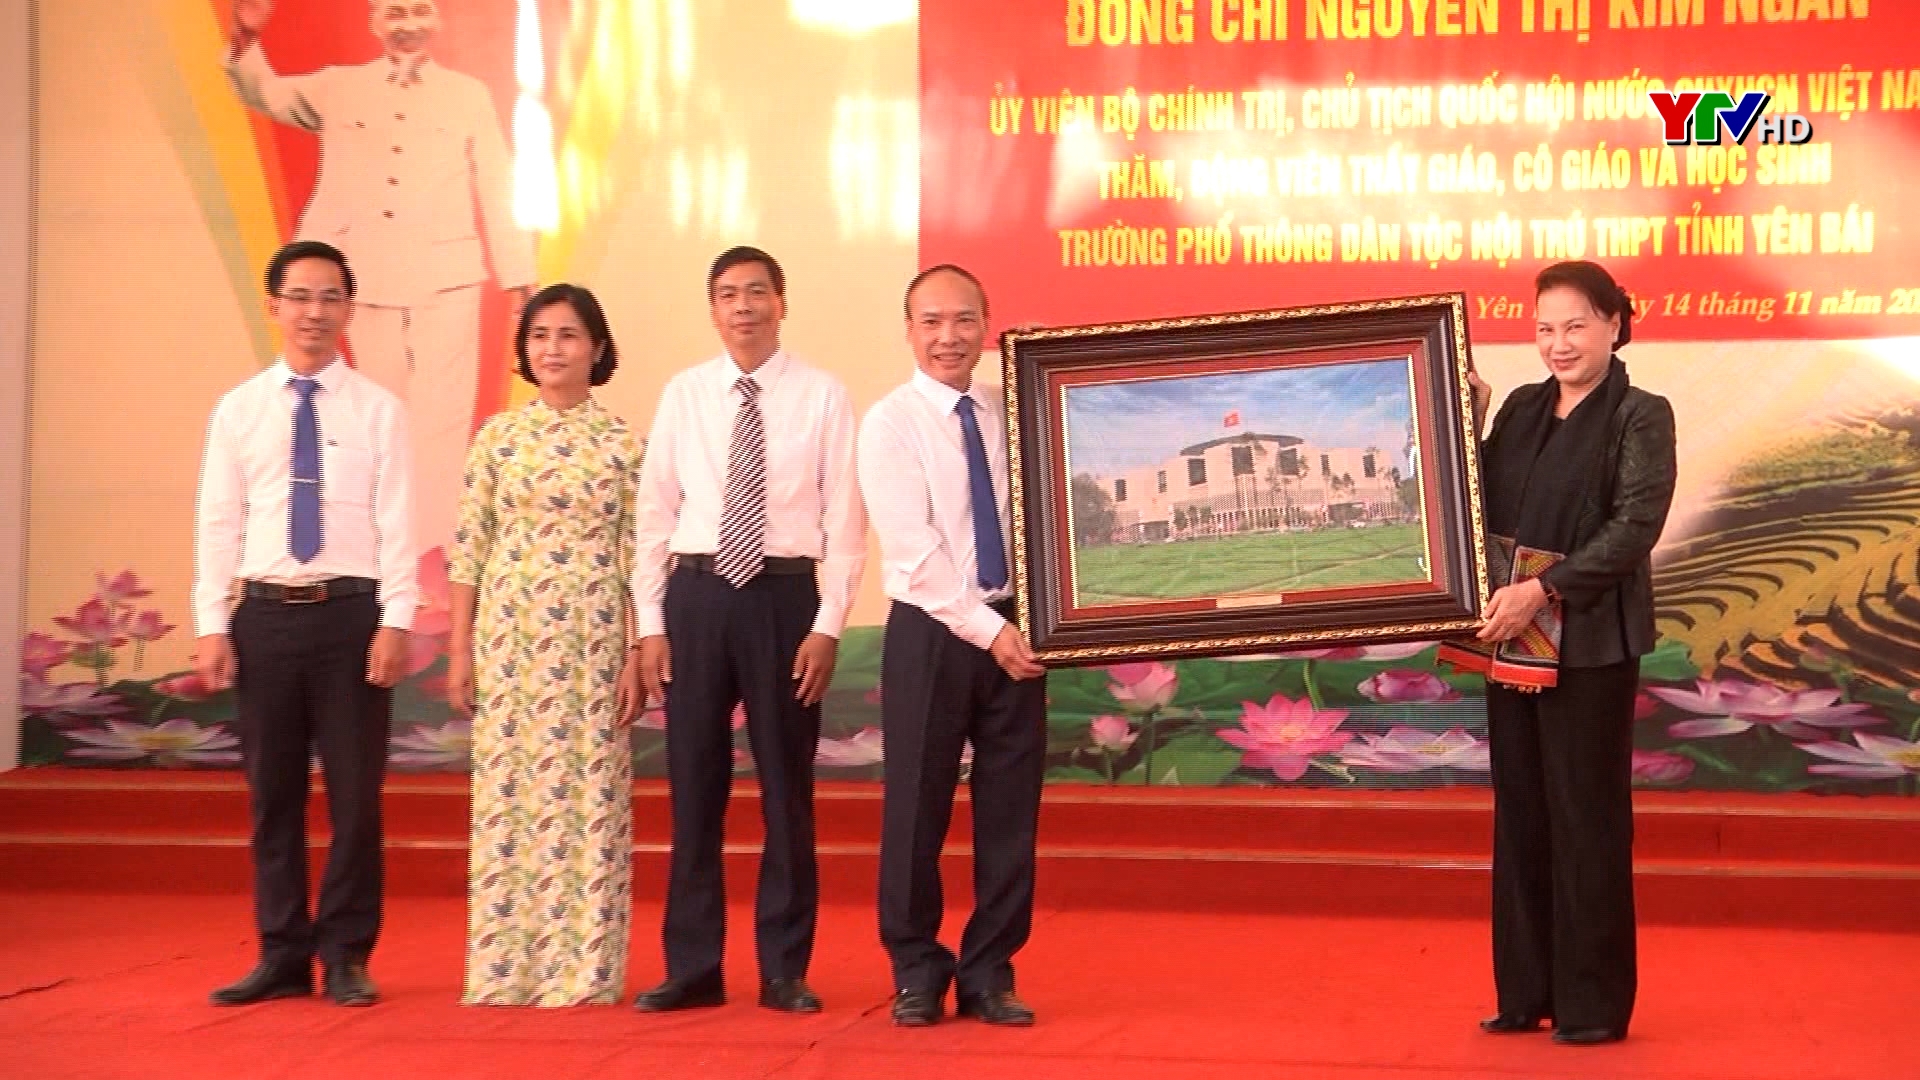 Đồng chí Chủ tịch Quốc hội Nguyễn Thị Kim Ngân thăm Trường PTDT nội trú - THPT tỉnh Yên Bái